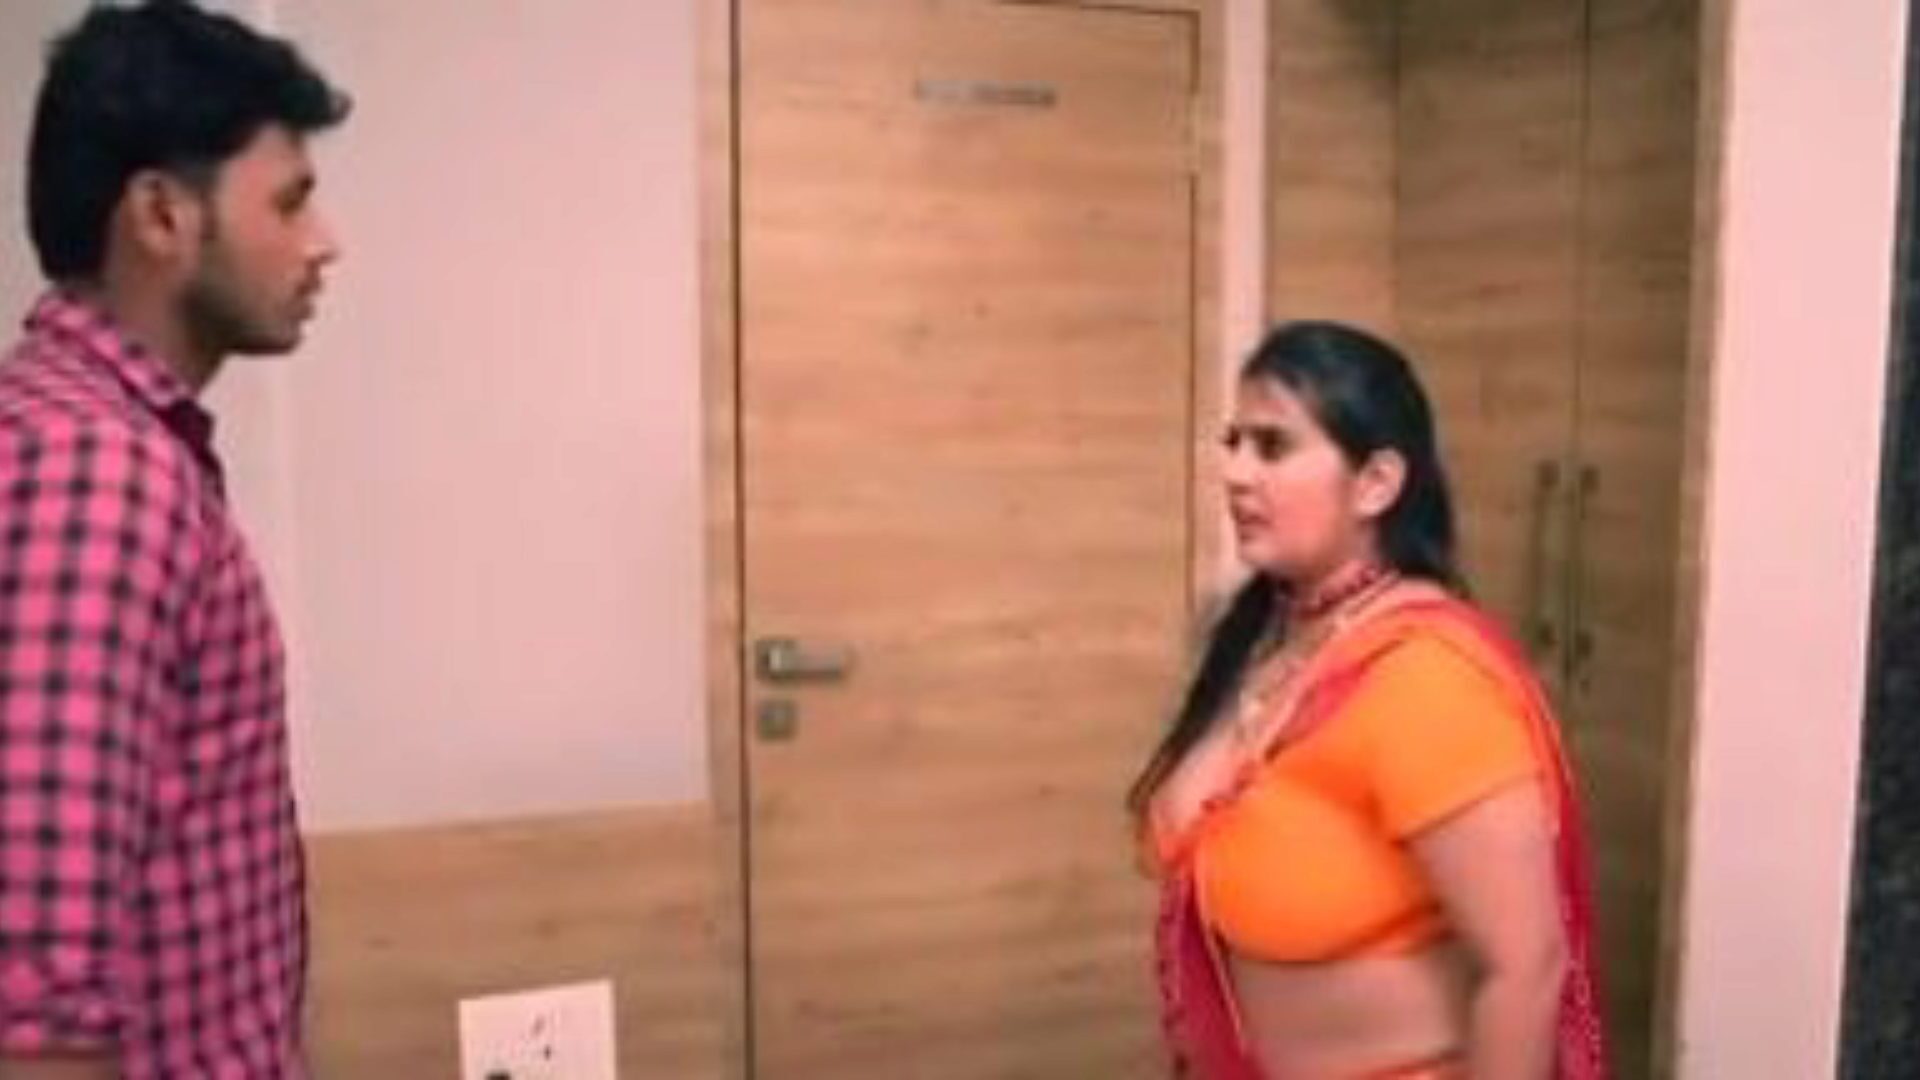 kanchan aunty ep5: free aunty xxx porn video 03 - xhamster ver kanchan aunty ep5 tube escena de película de hacer el amor gratis para todos en xhamster, con el grupo superior de bangladeshi aunty xxx & aunty viñetas de películas porno móviles